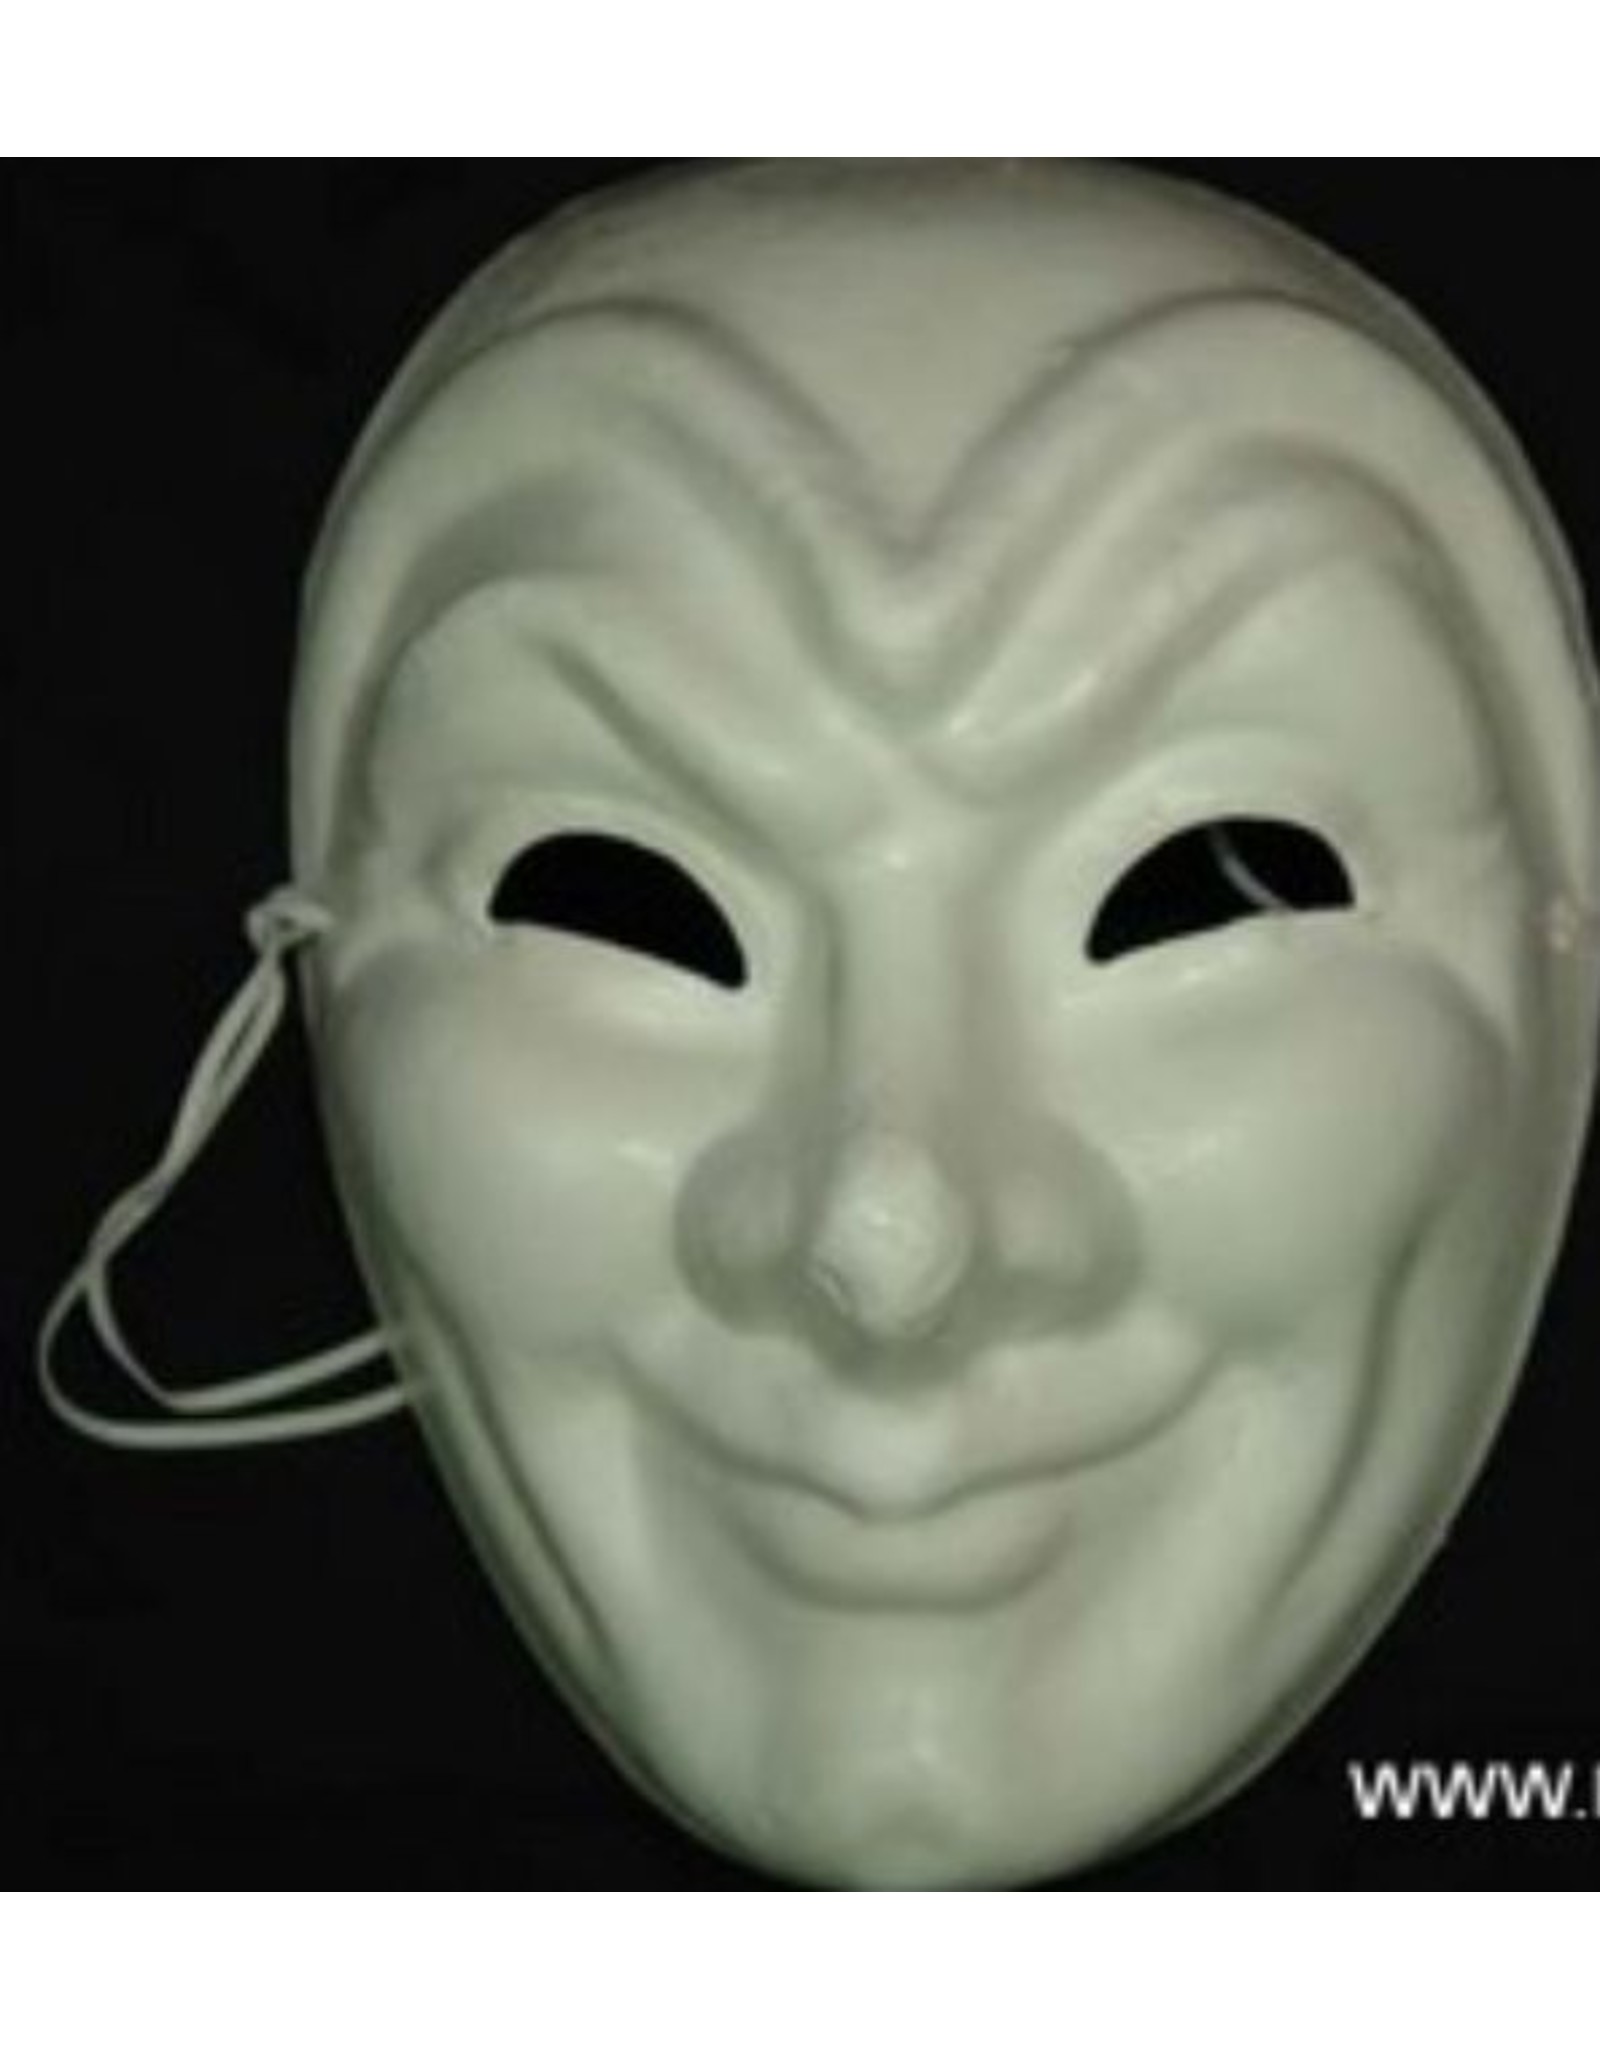 full face paper mask